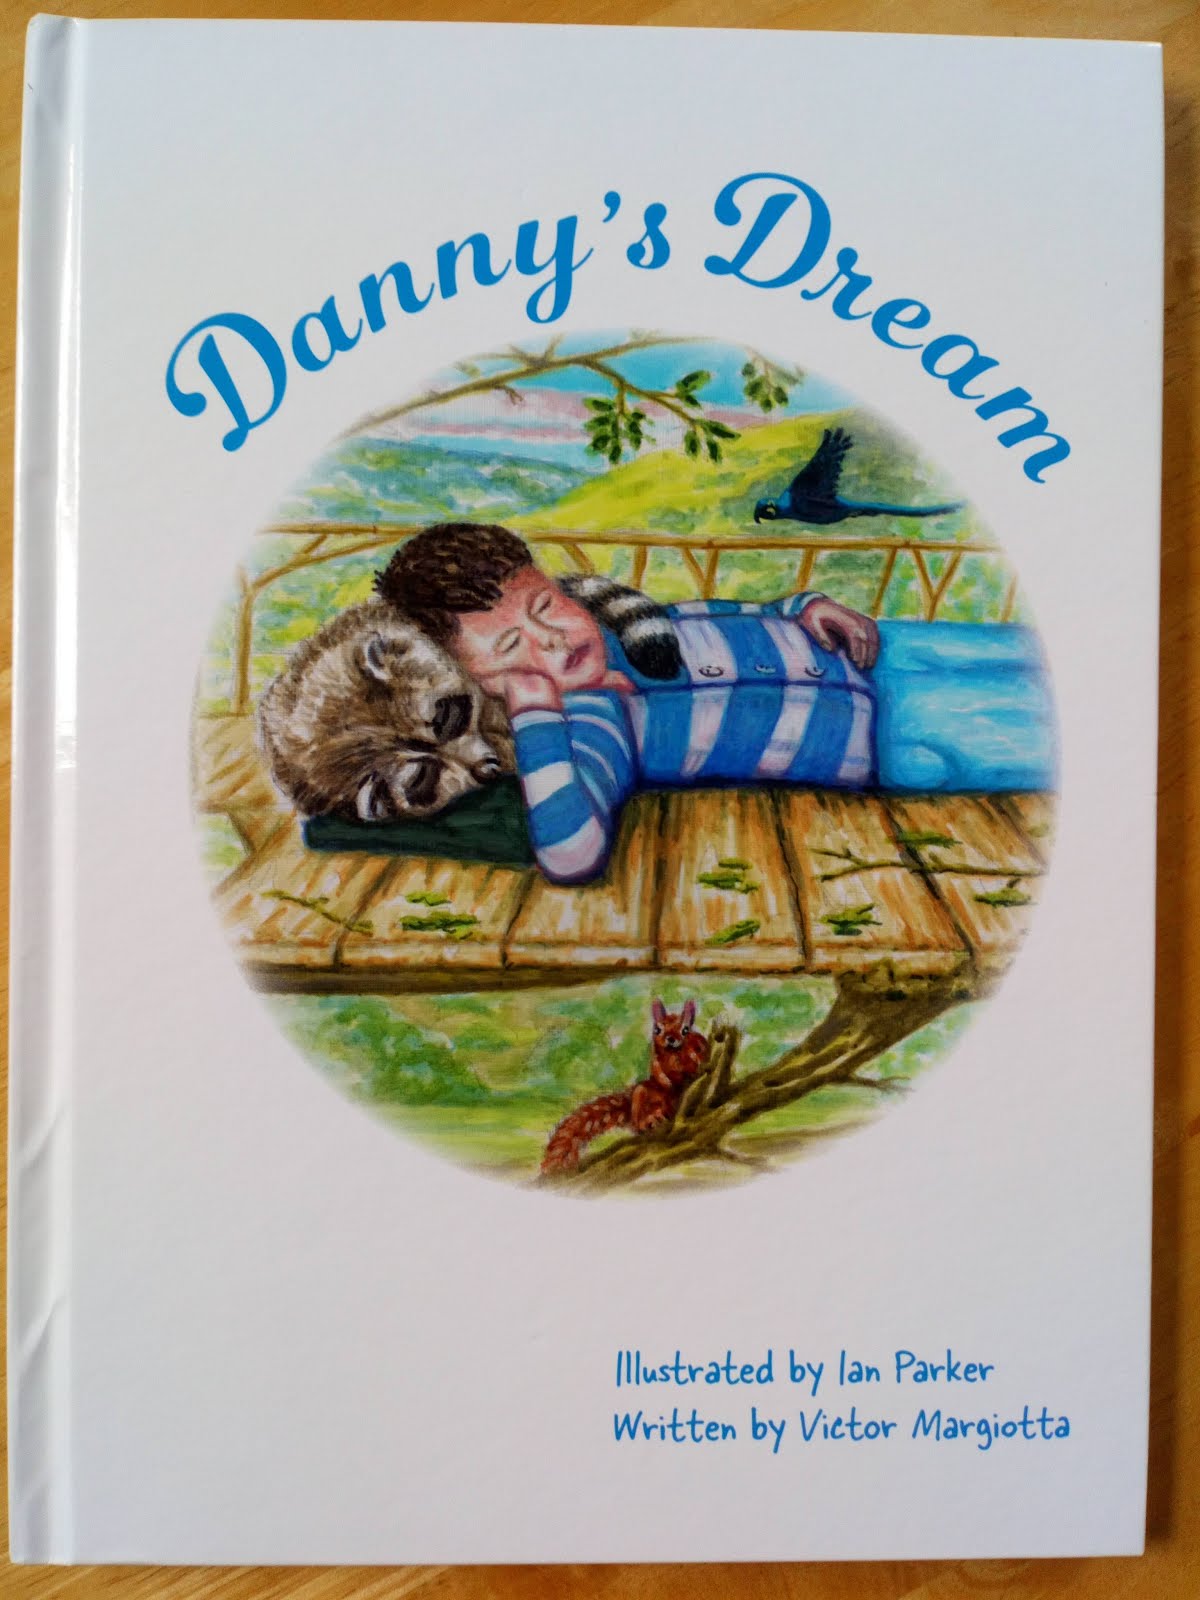 Danny dream com